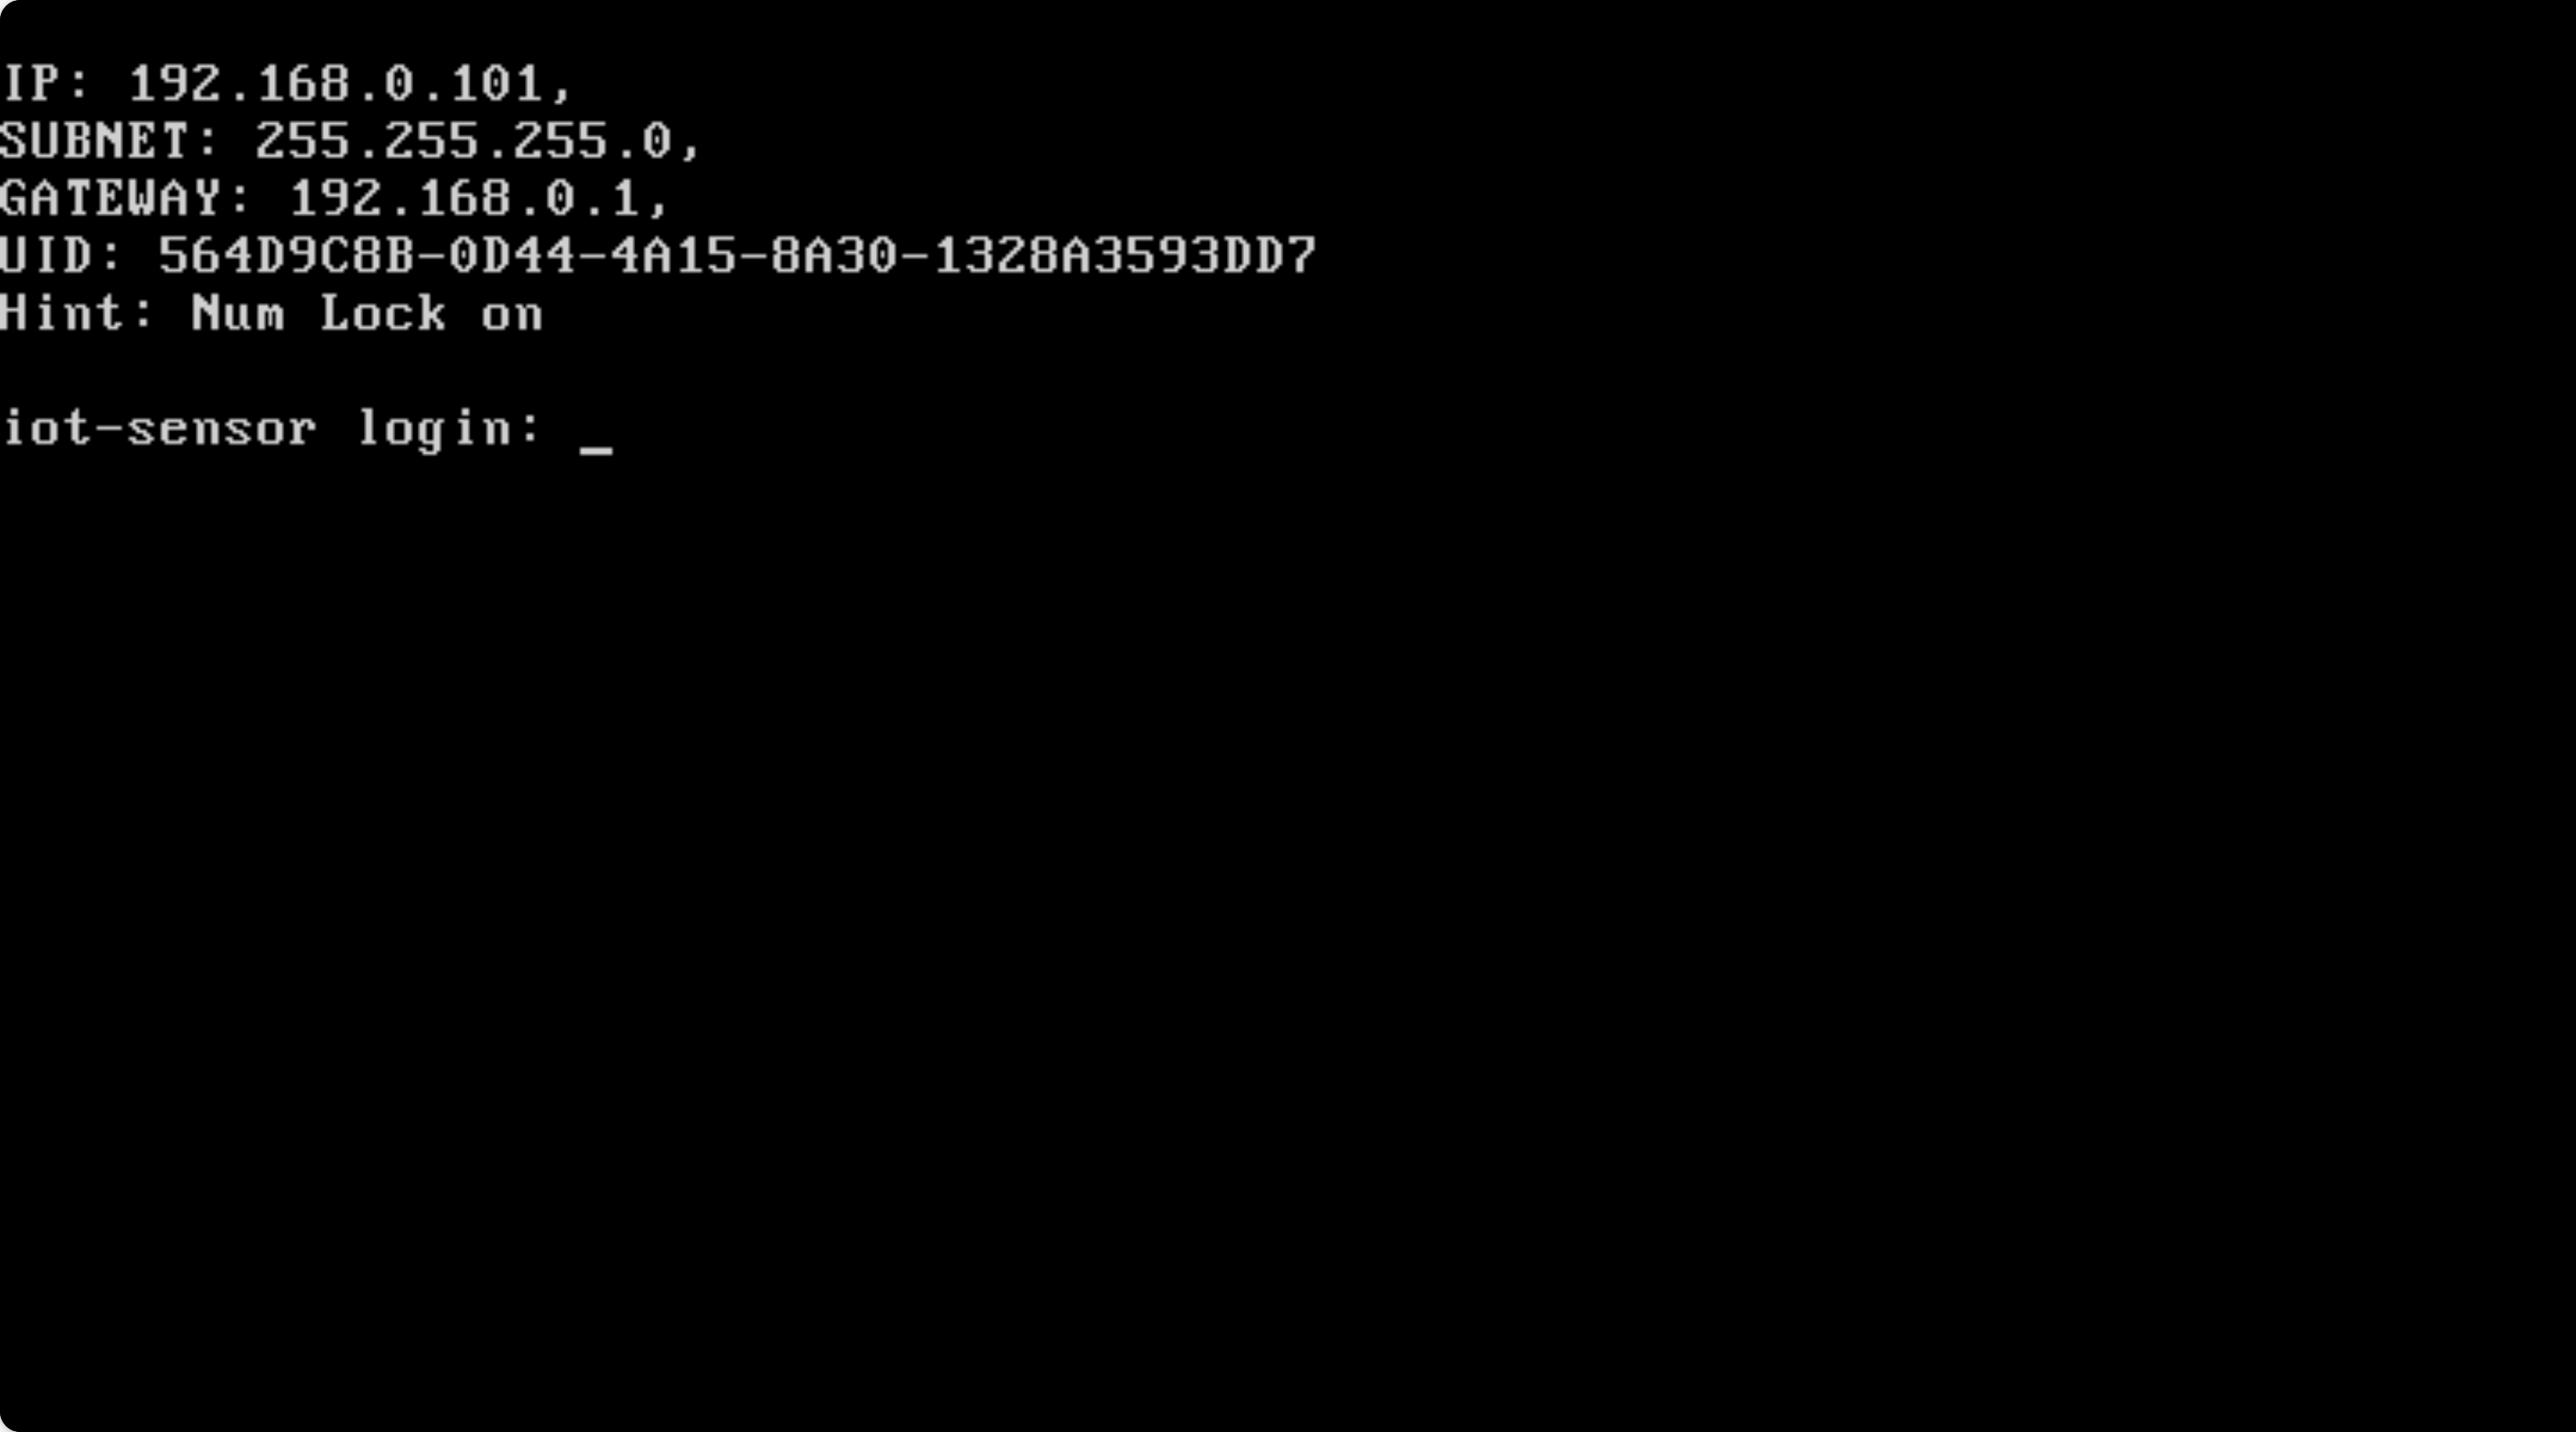 Capture d’écran de l’invite de connexion finale à la fin de la configuration CLI initiale.